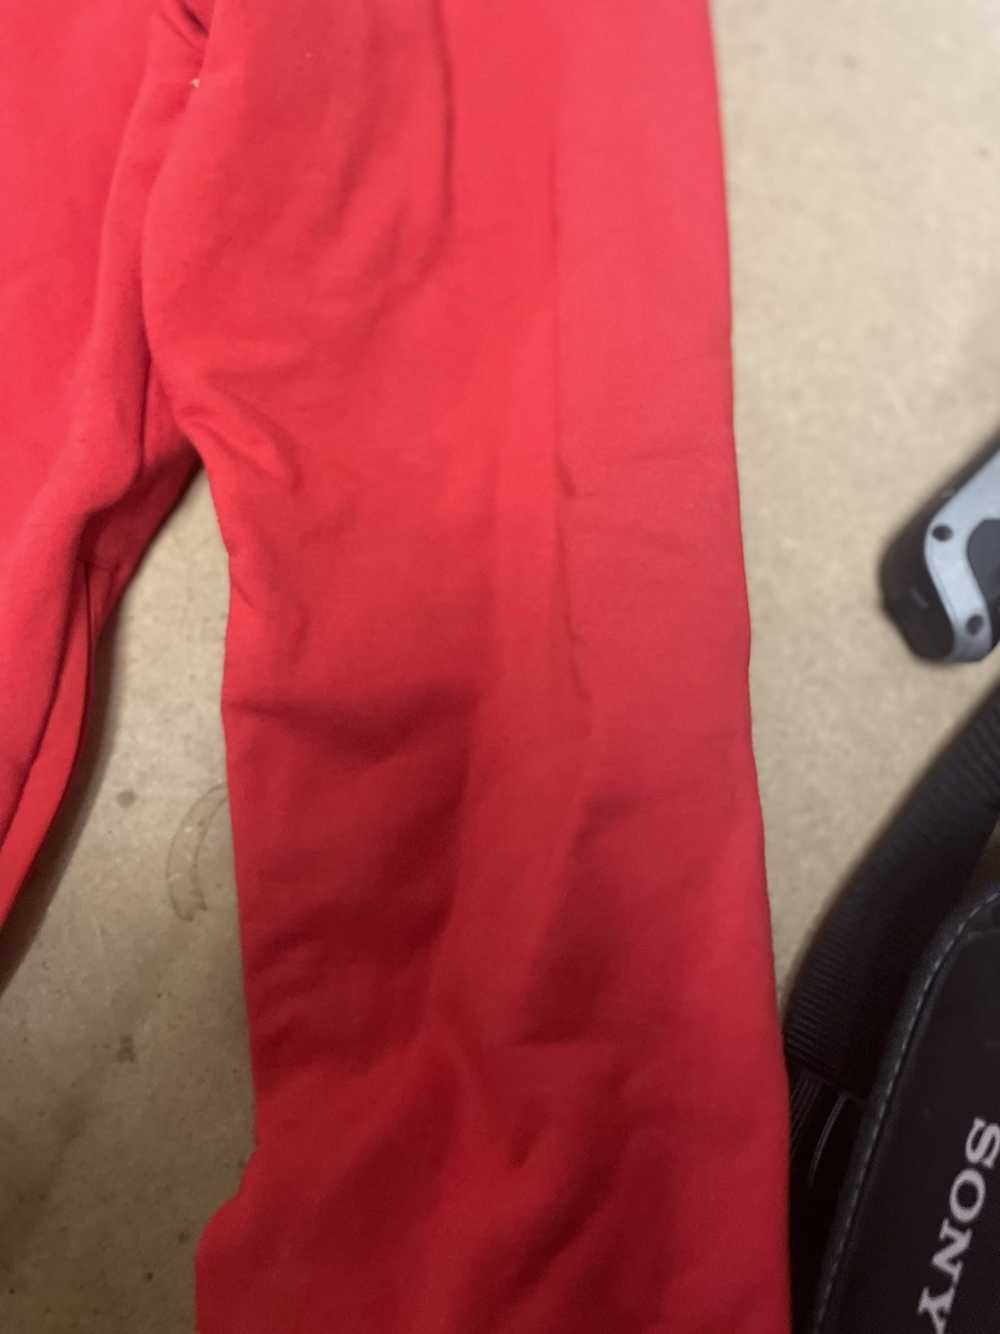 Hudson Outerwear Hudson sweatshirt red Size Large… - image 8